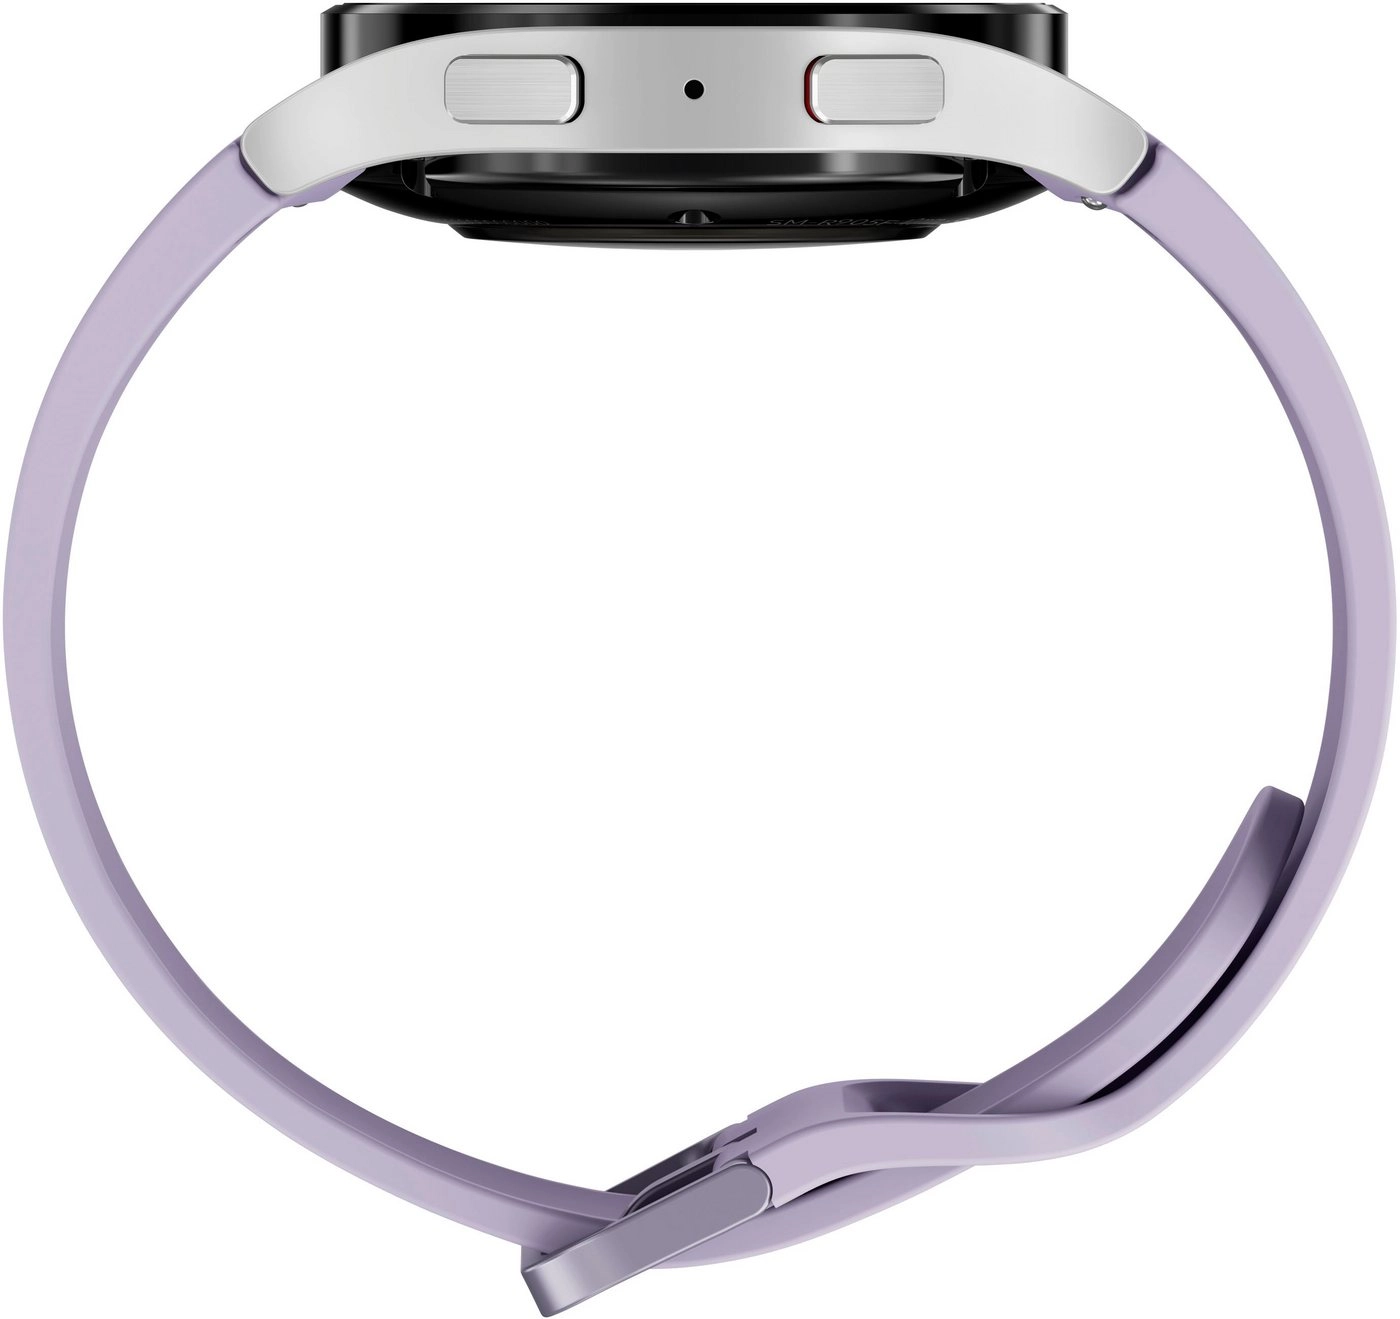 Samsung Galaxy Watch 5 LTE (40mm) in silber | 100 Samsung Pay Guthaben Smartwatch | Bis zu 80 Stunden Akkulaufzeit | Wassergeschützt bis 5 ATM | Blutdruck-Messung | Sturzerkennung